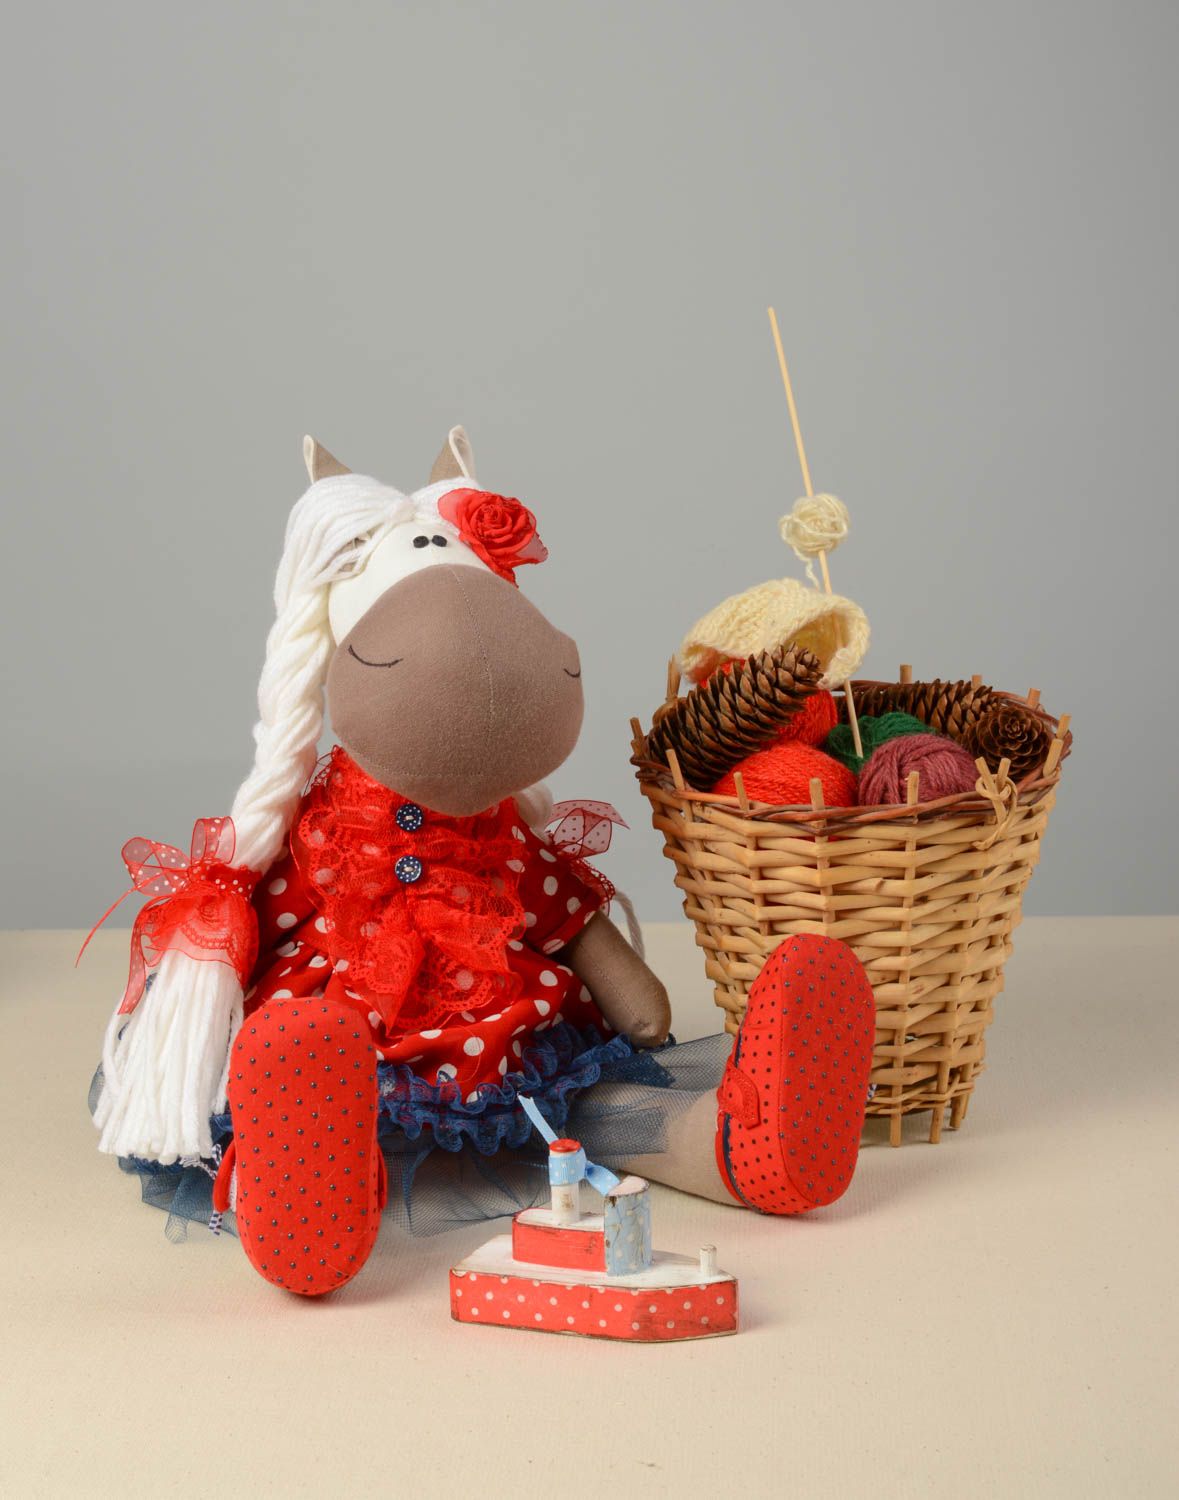 Textil Kuscheltier Pferd niedlich Spielzeug für Kinder und Dekor nette Schöne foto 1